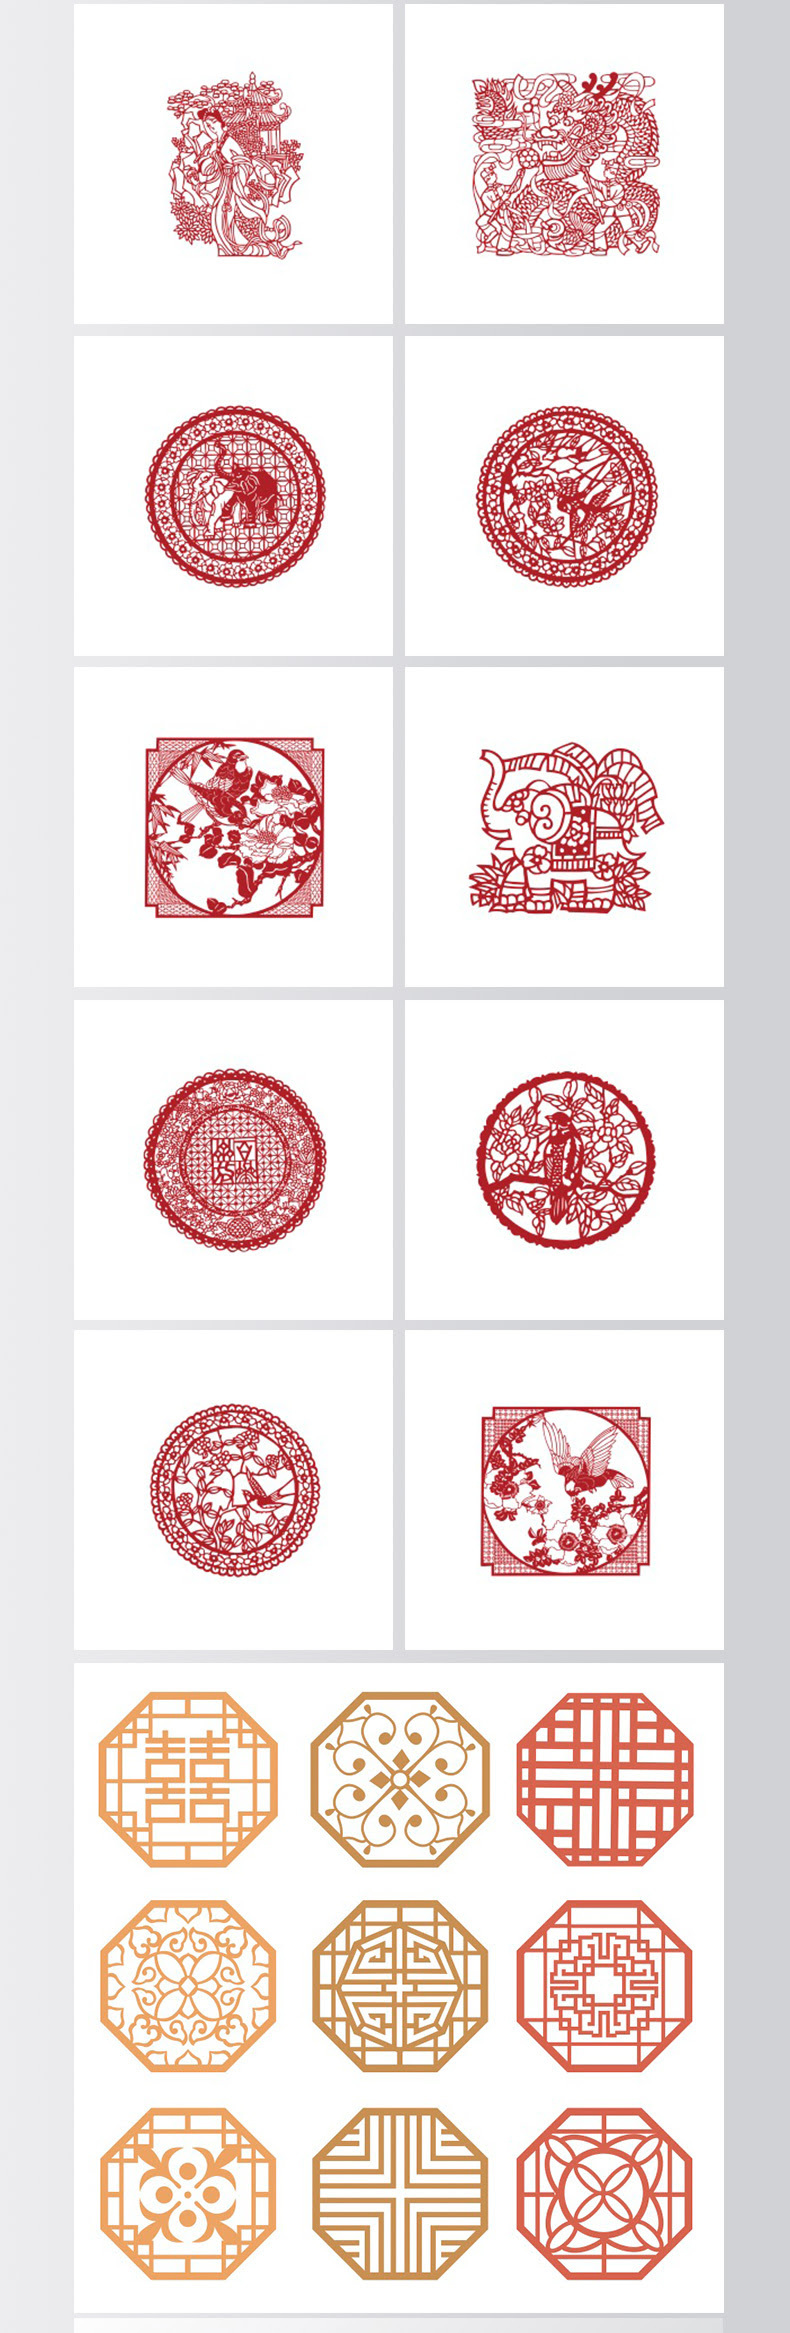 中式古典中国风窗格窗花剪纸图案古风边框纹理矢量素材-插画、设计元素-到位啦UI